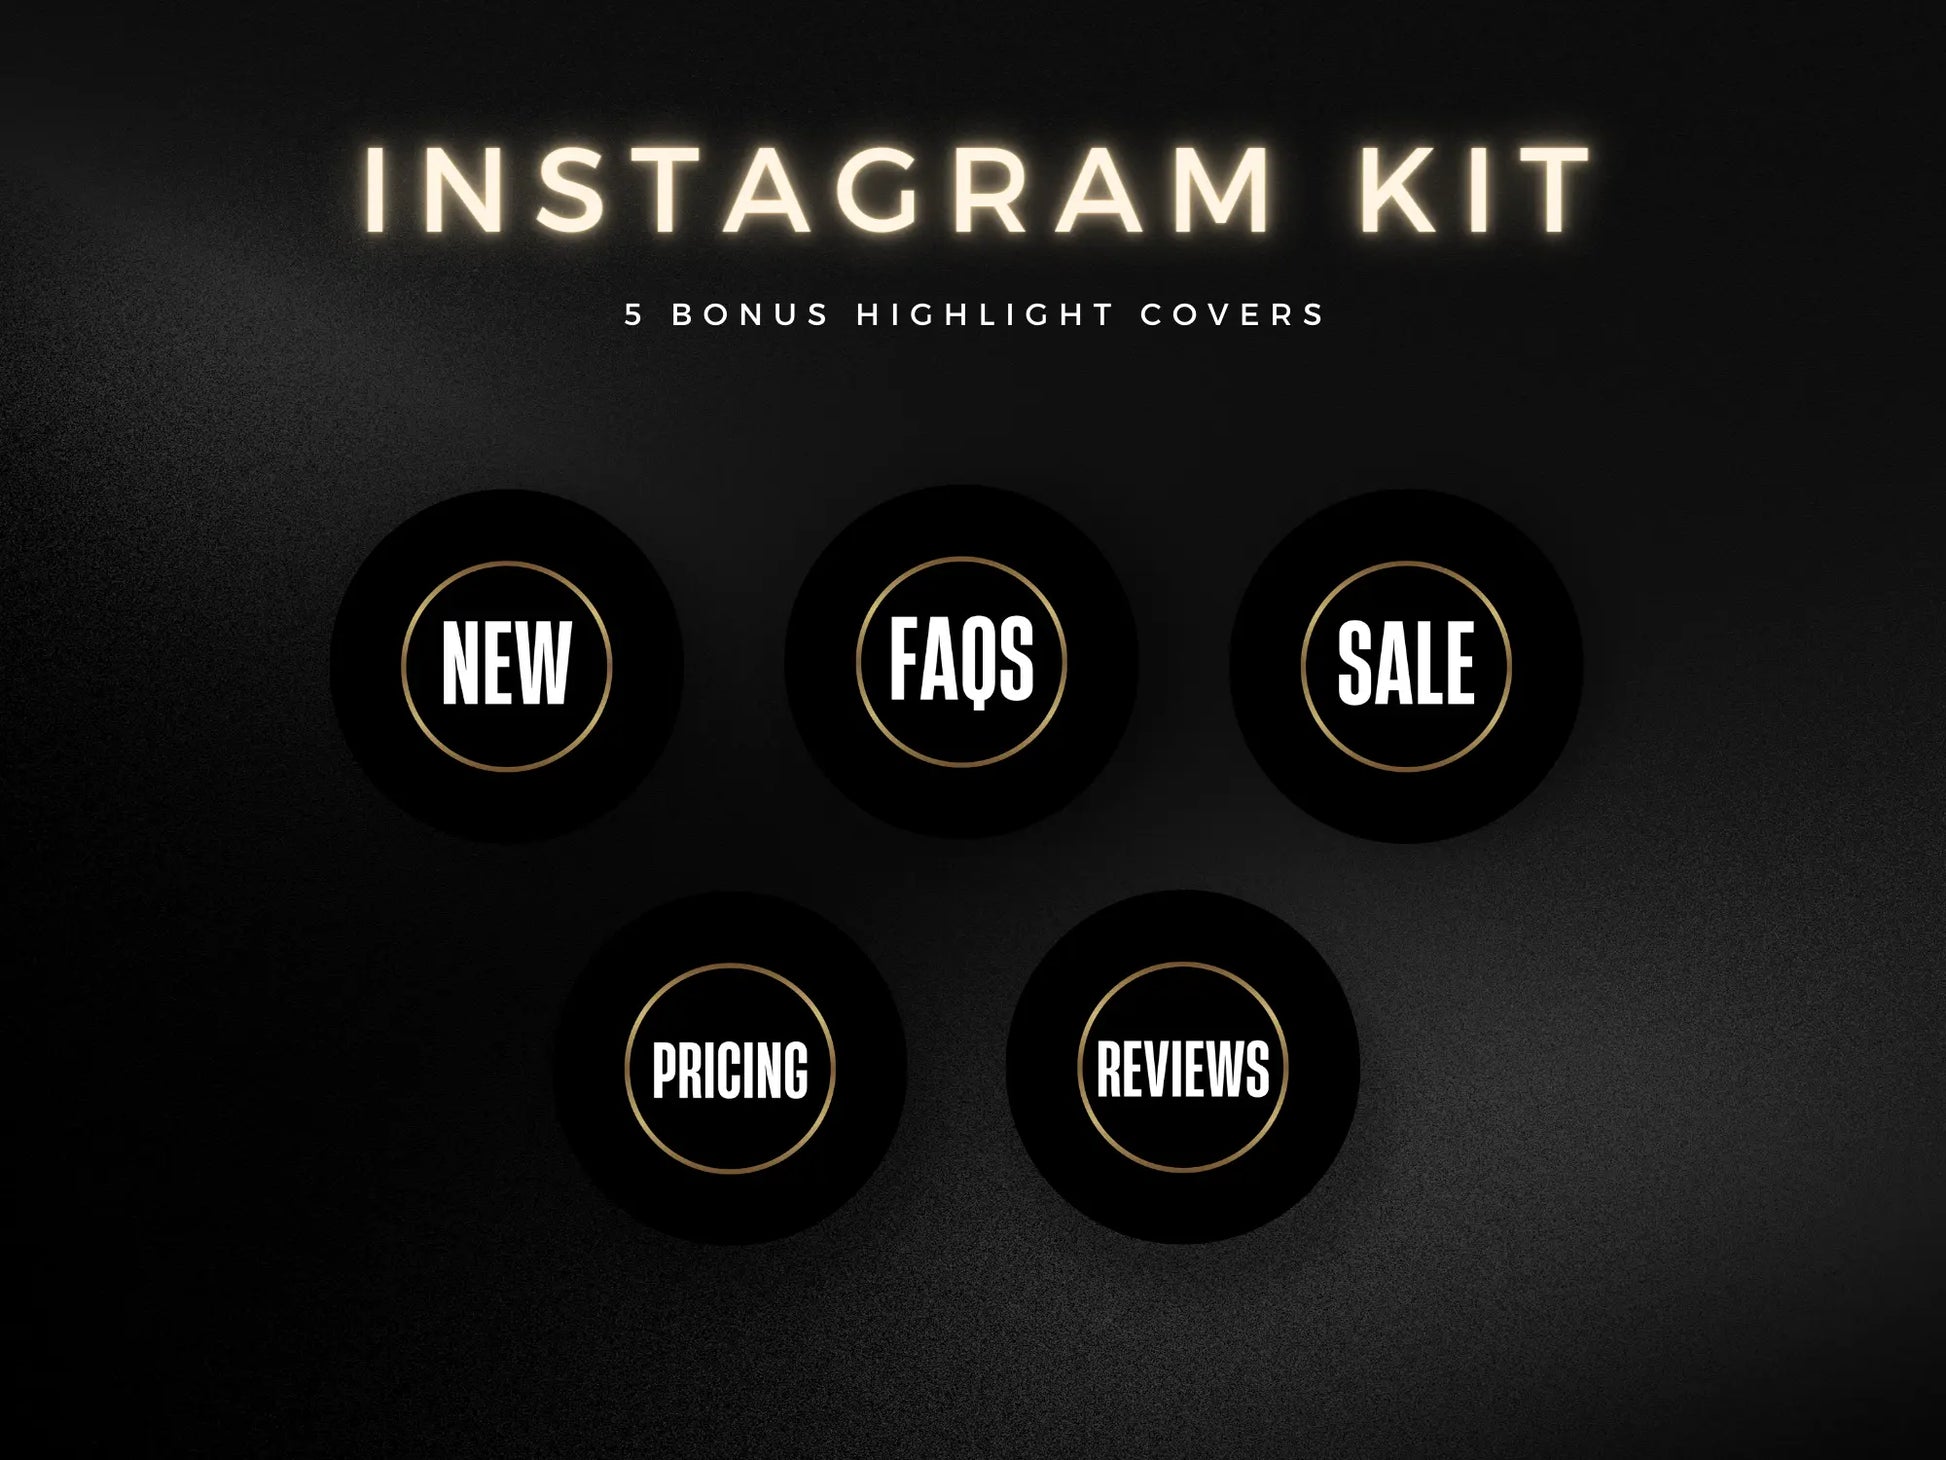 Black & Gold Braiding Instagram Kit covers